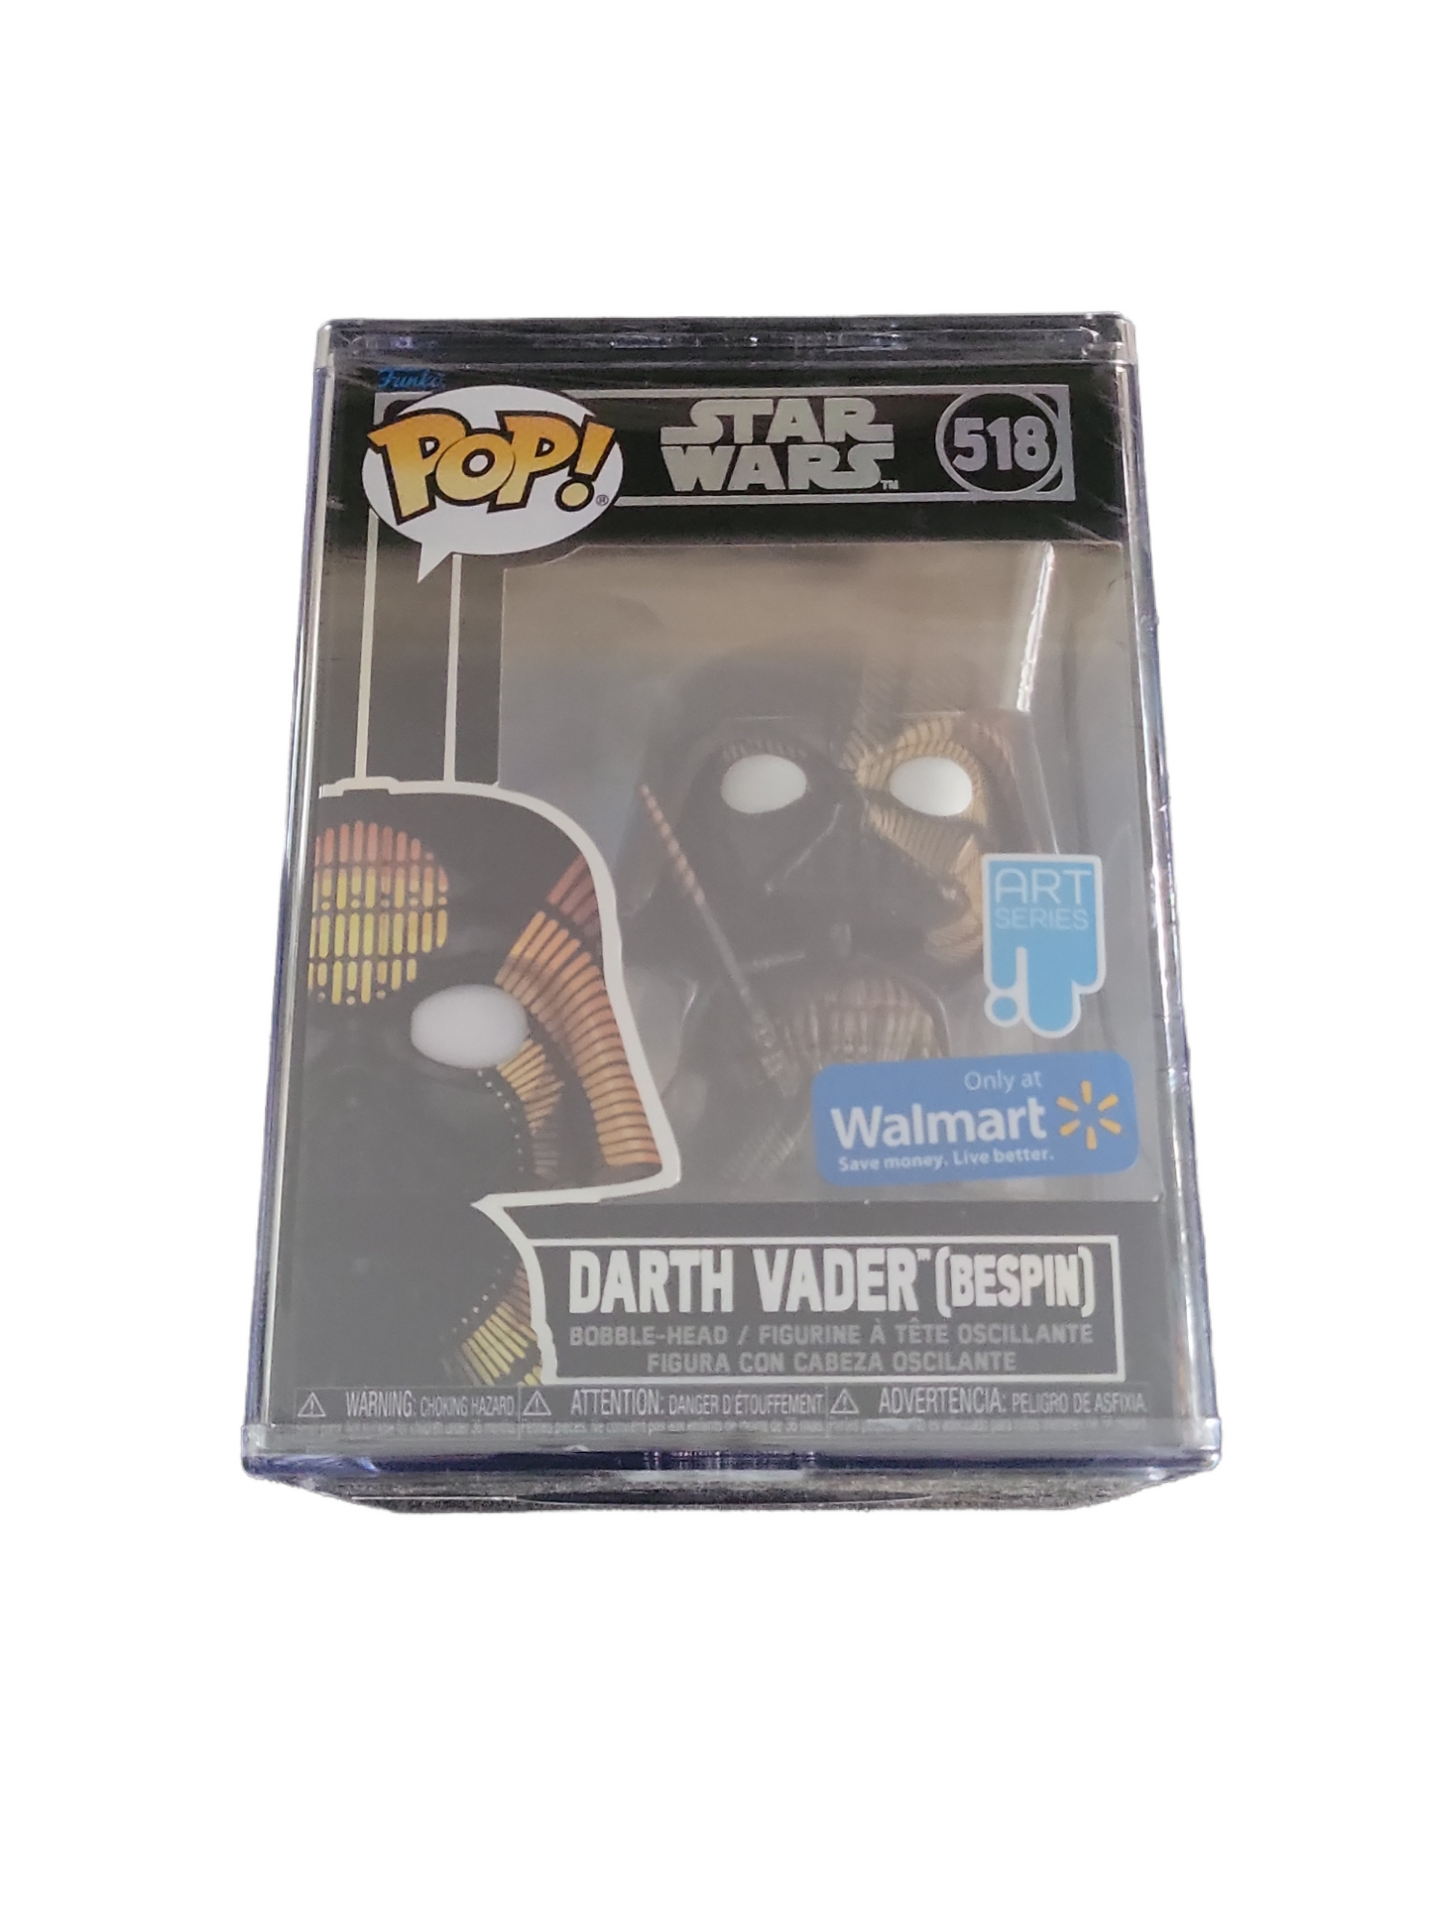 Funko POP! Star Wars #518 Art Series - Darth Vader (Bespin) - (Walmart Exclusive)